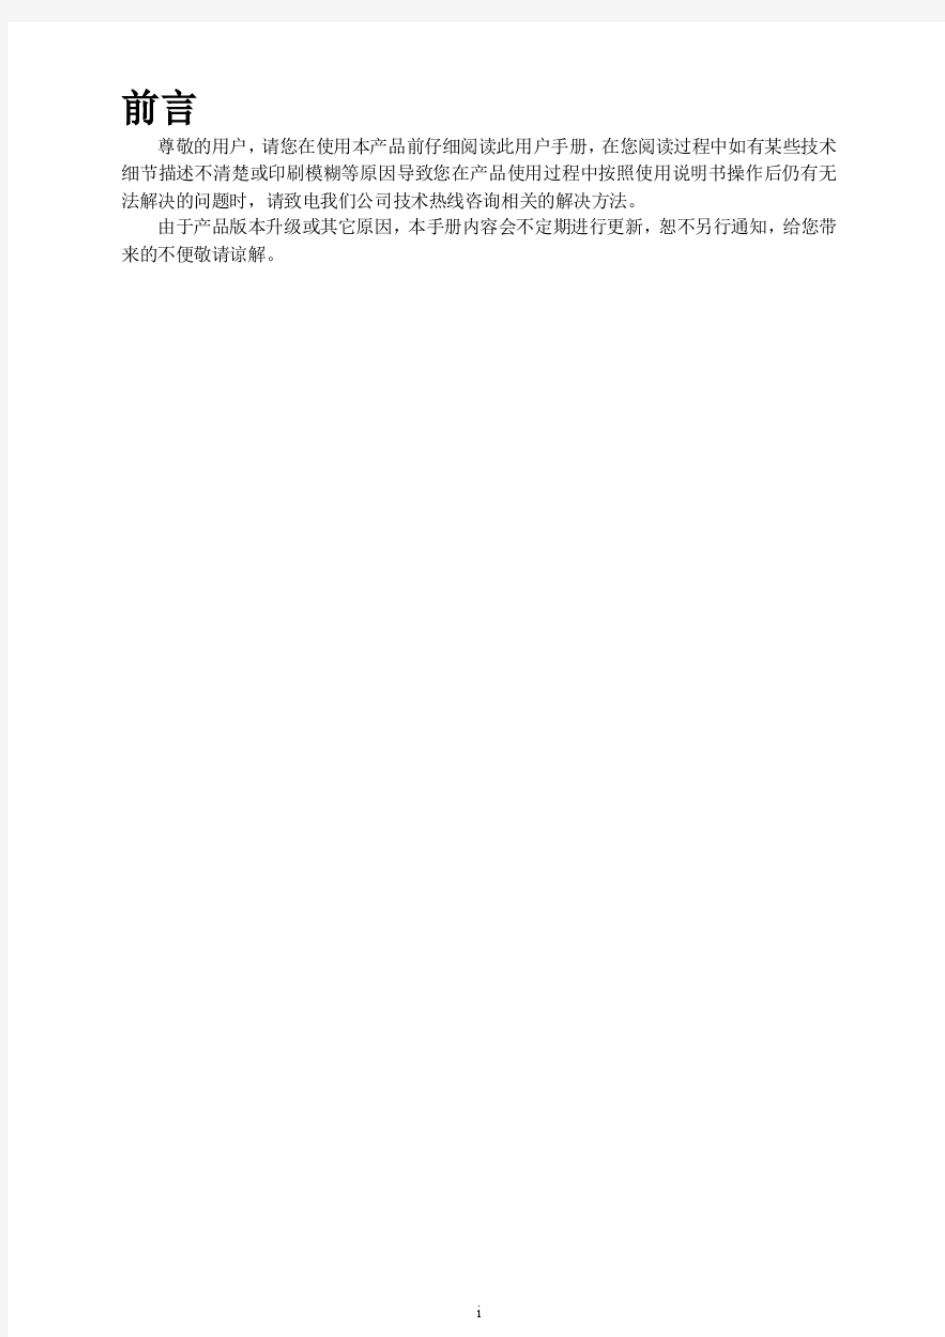 高清红外防暴半球型网络摄像机用户手册V1.3(0615)